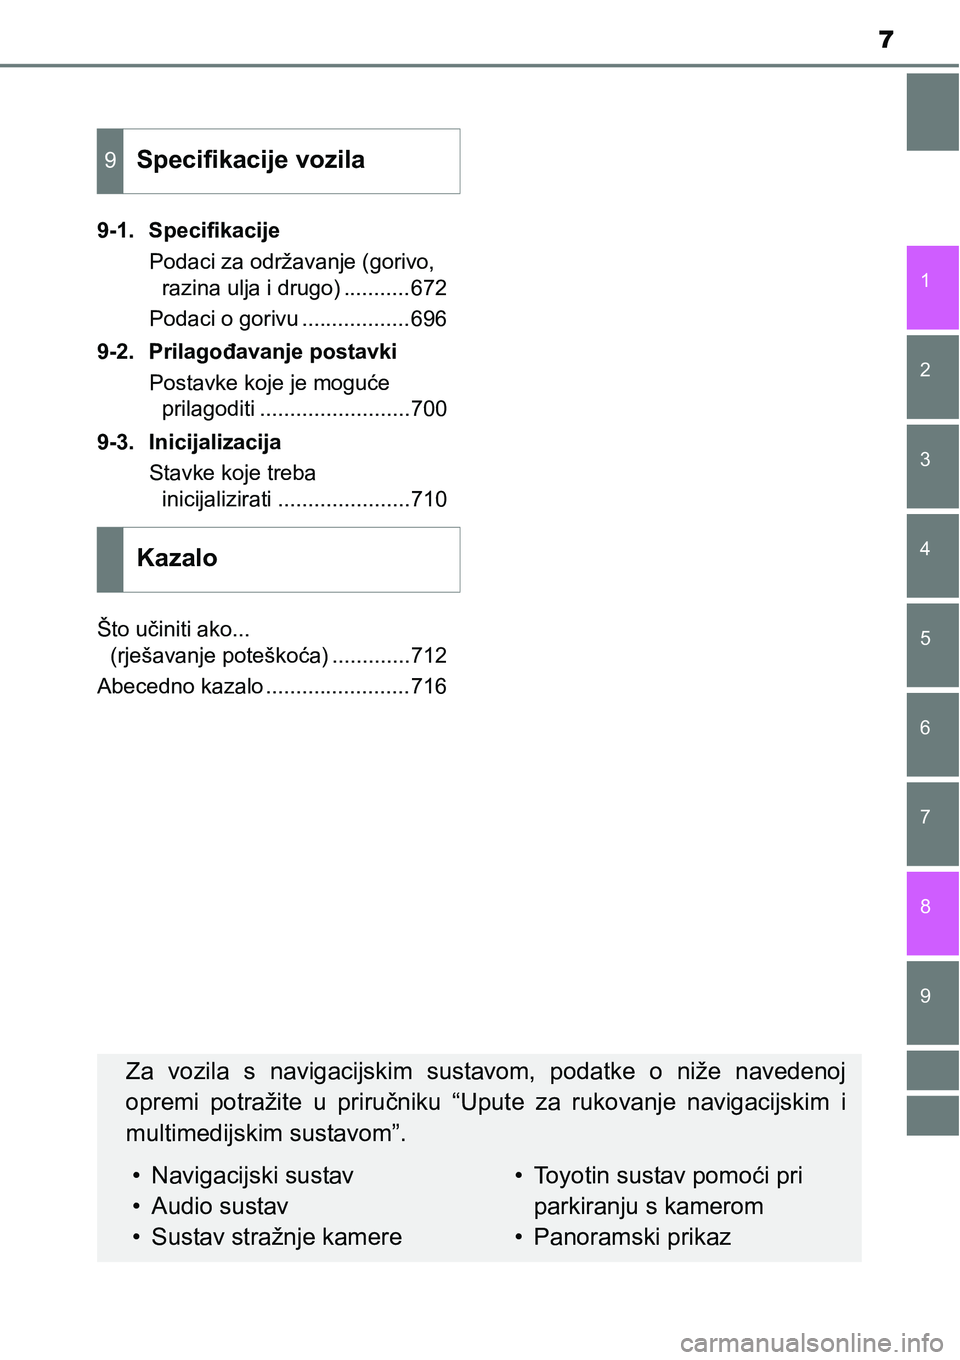 TOYOTA RAV4 2016  Upute Za Rukovanje (in Croatian) 9 8
7
1
7 6
5
4
3
2
9-1. Specifikacije
Podaci za održavanje (gorivo, 
razina ulja i drugo) ...........672
Podaci o gorivu ..................696
9-2. Prilagođavanje postavki
Postavke koje je moguće
